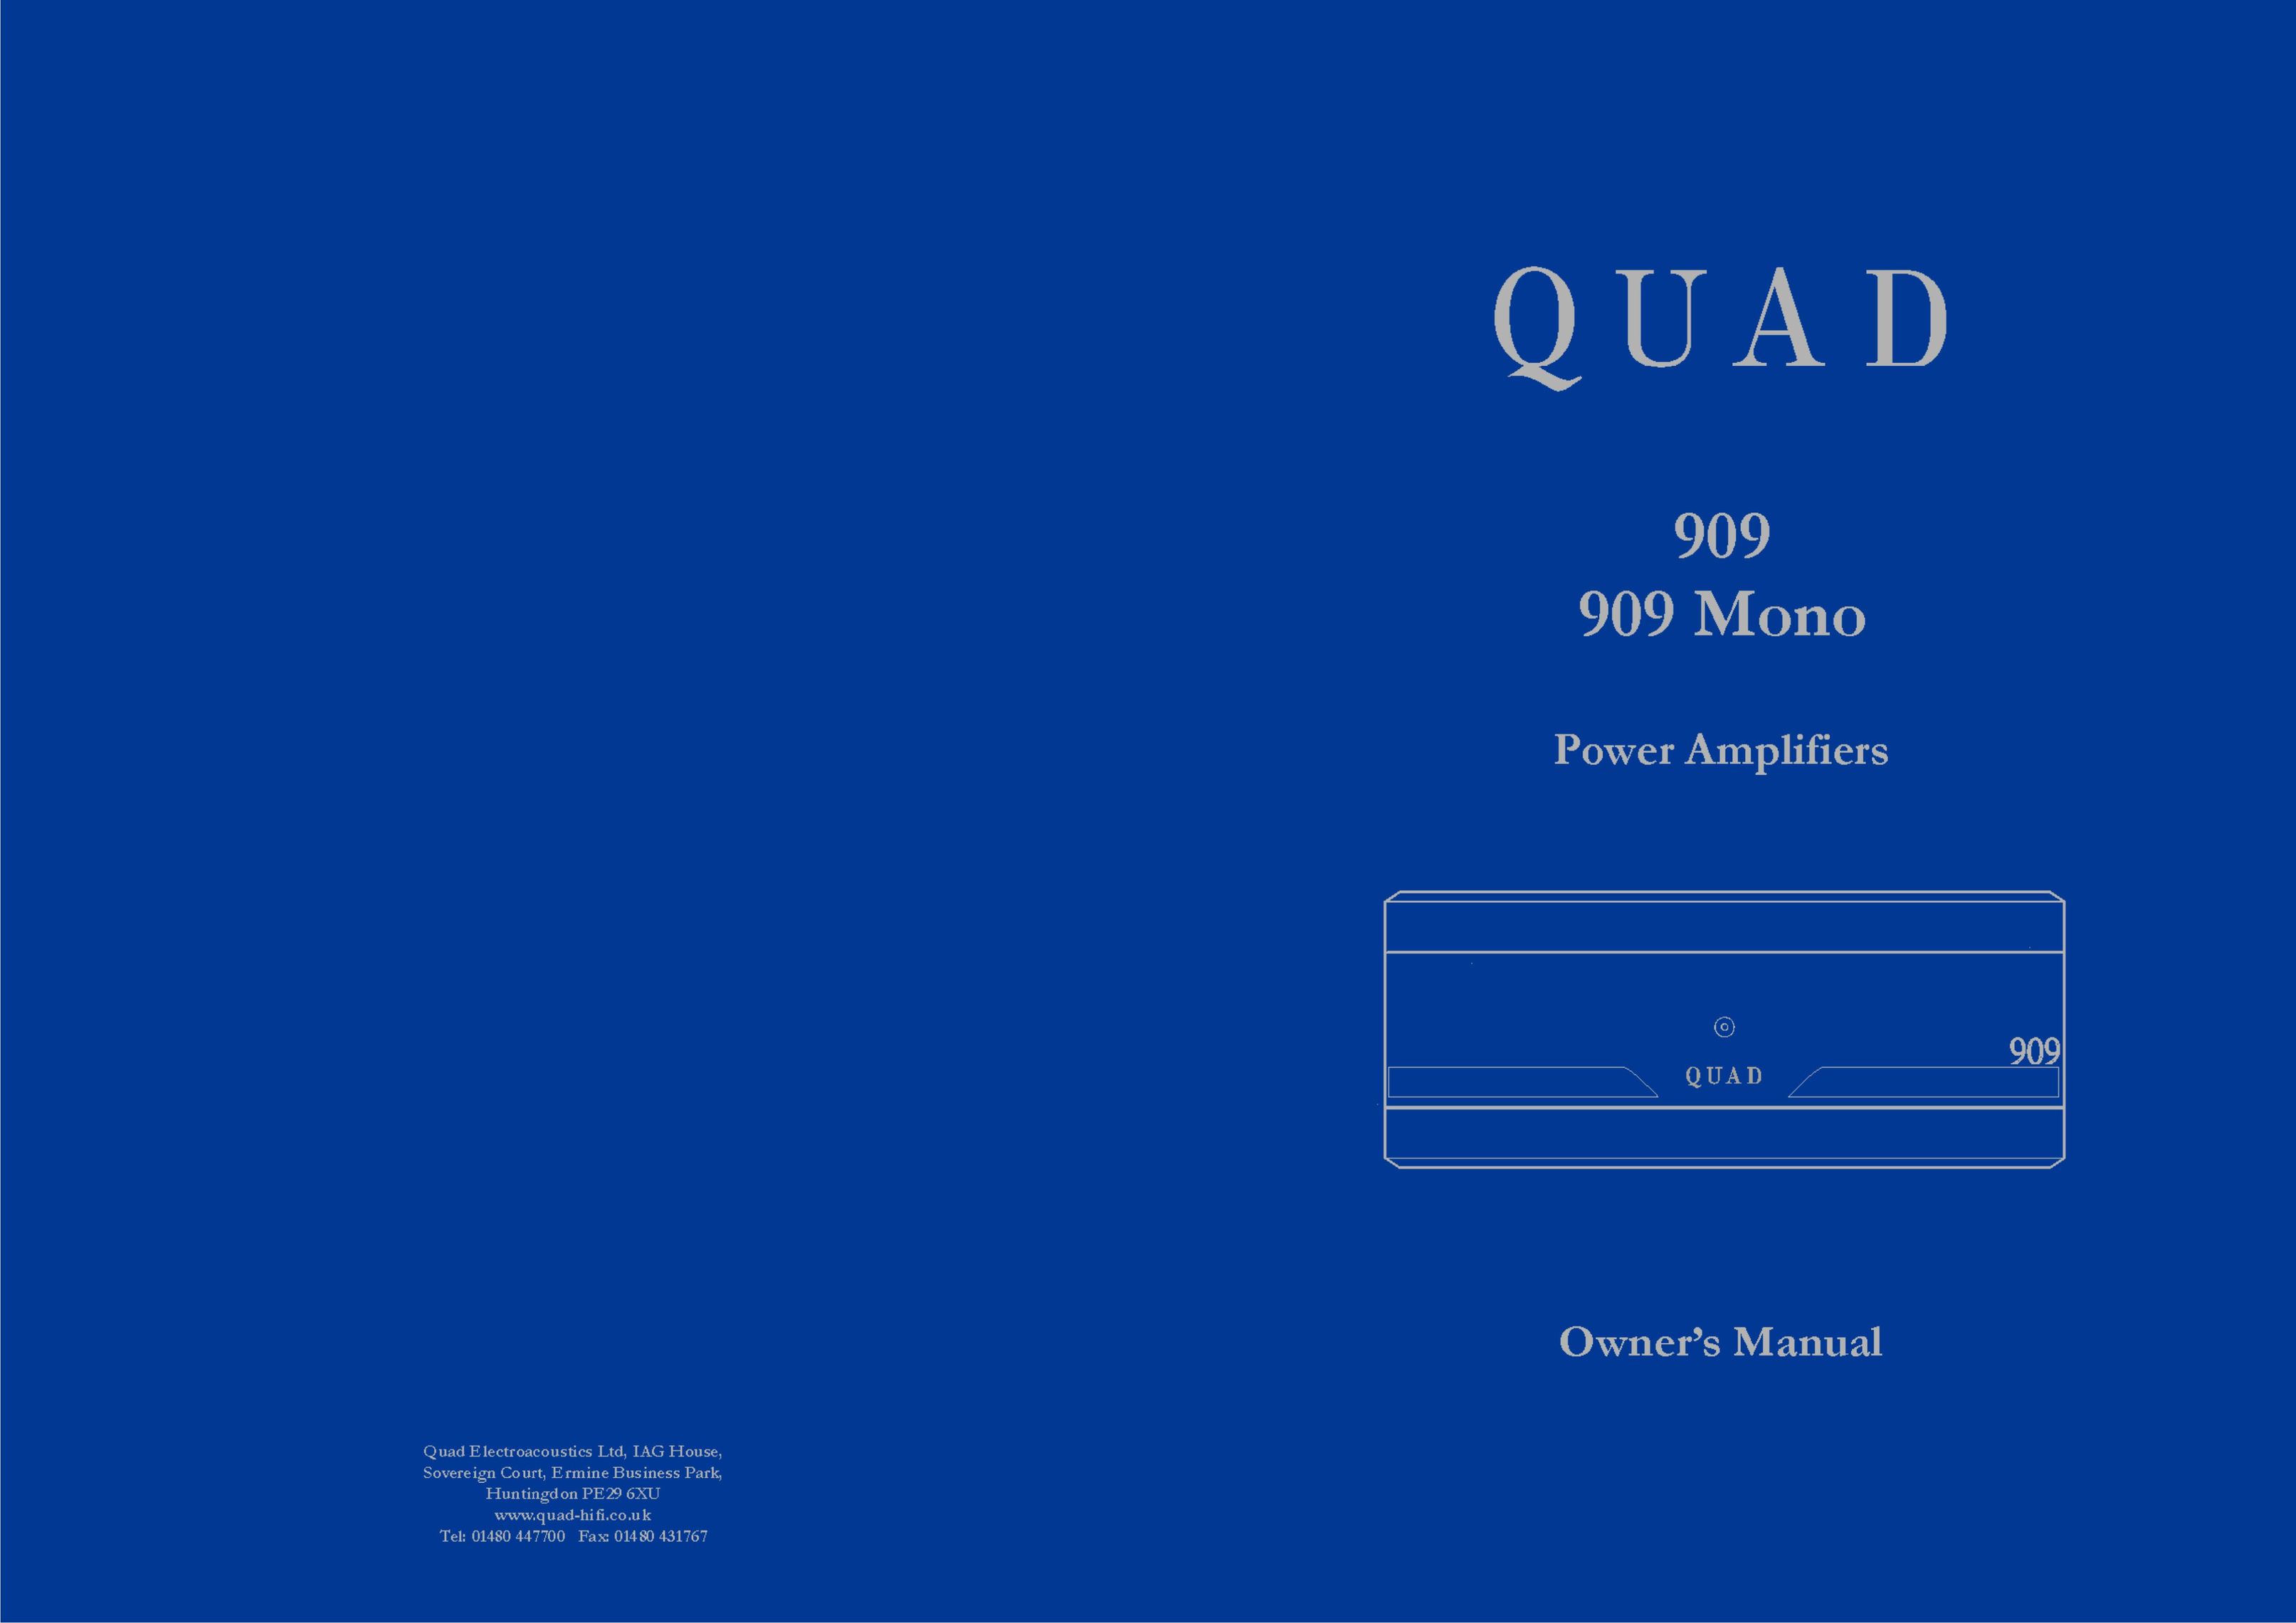 QUAD 909 Mono Stereo Amplifier User Manual